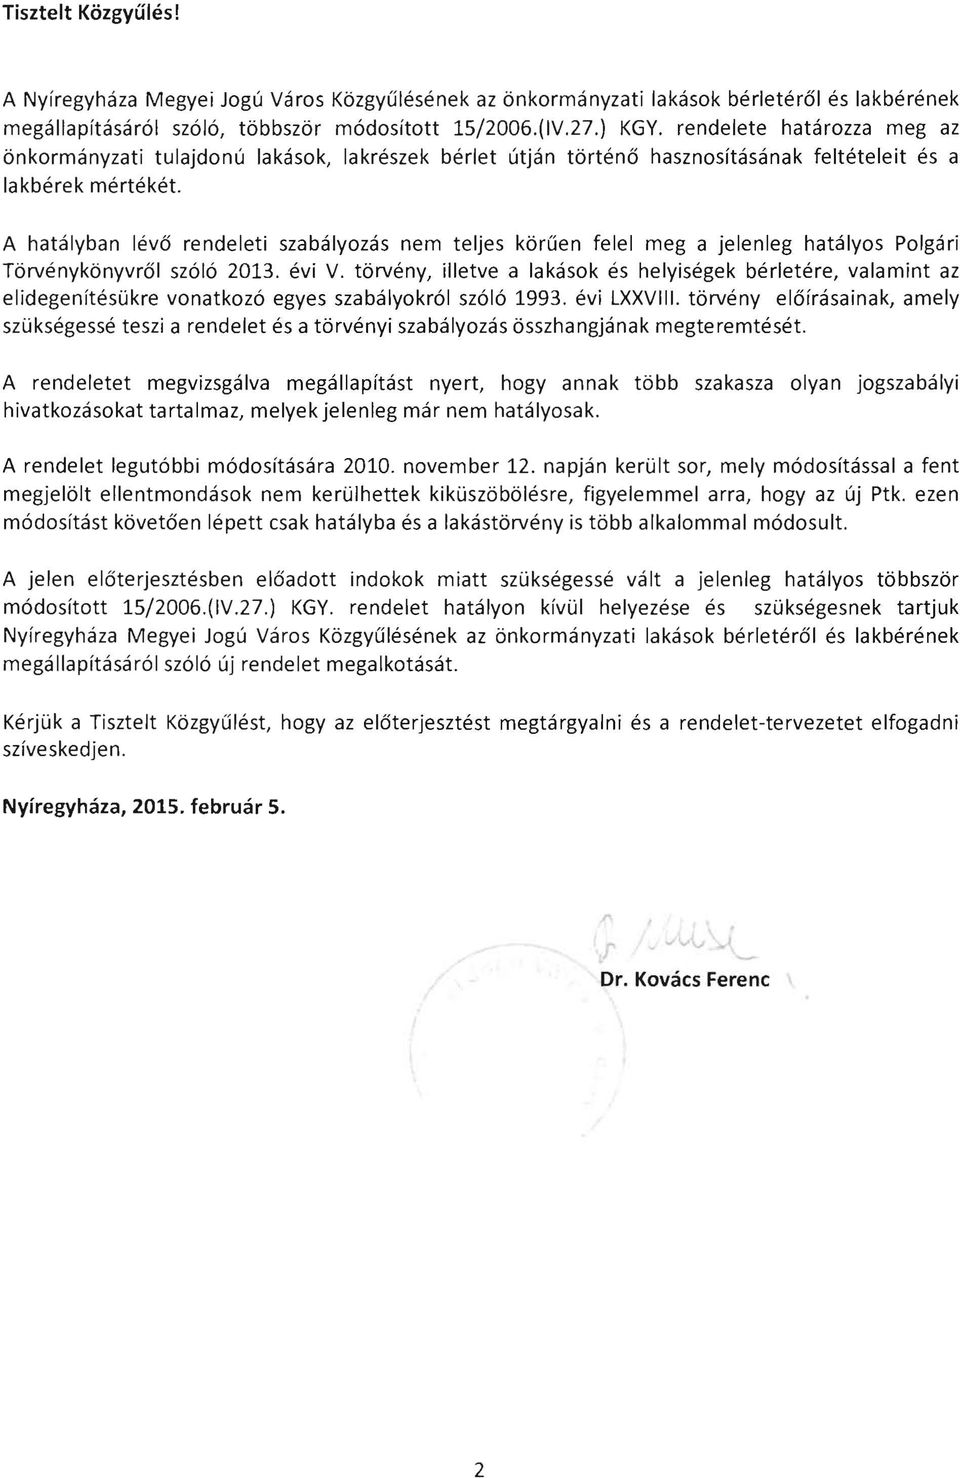 A hatalyban leva rendeleti szabalyozas nem teljes kbruen felel meg a jelenleg hatalyos Polgari Tbrvenykbnyvral szolo 2013. evi V.